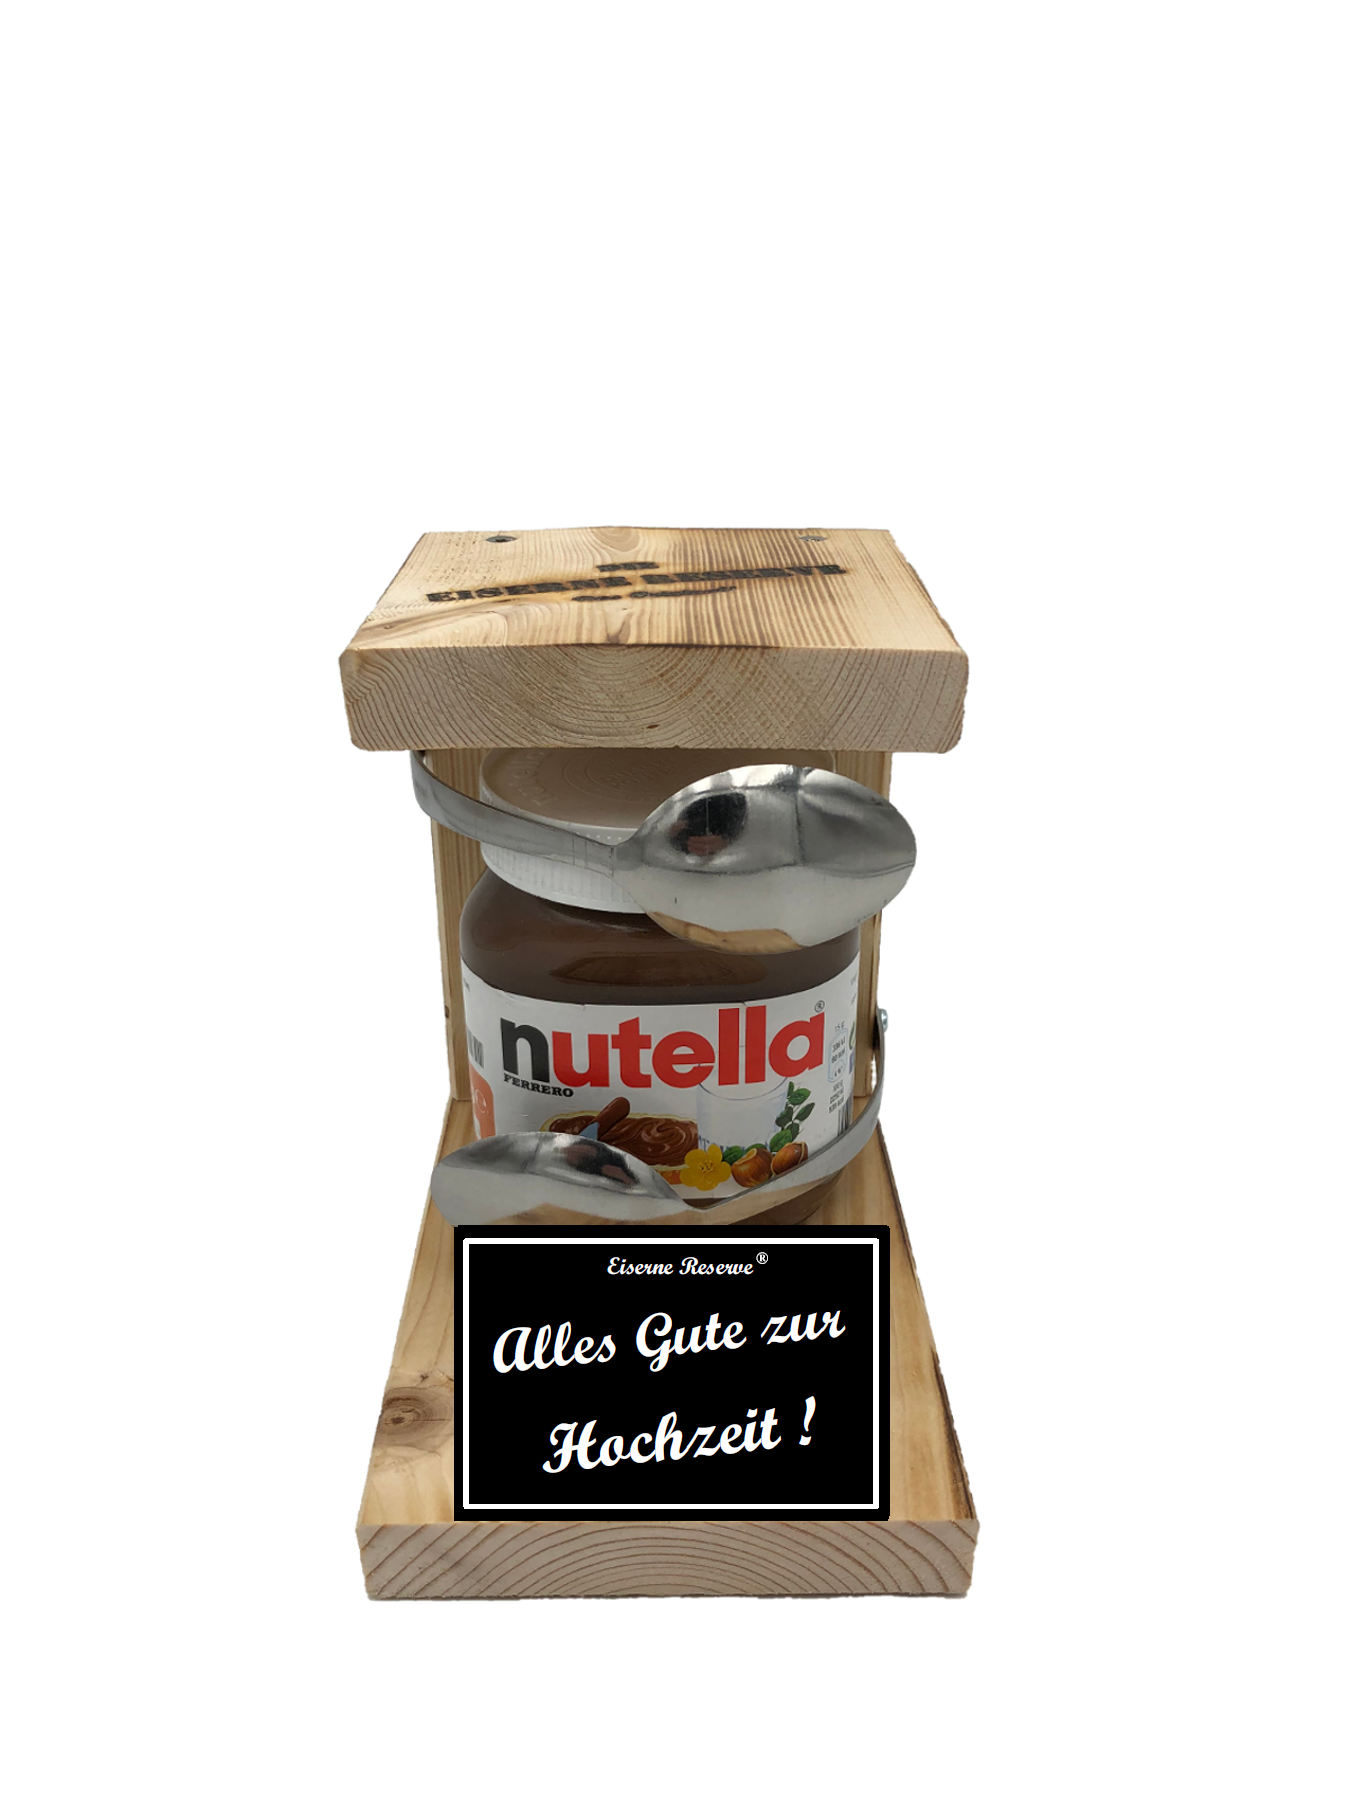 Reserve Löffel Nutella - Nutella Geschenk - Geschenk für die Hochzeit